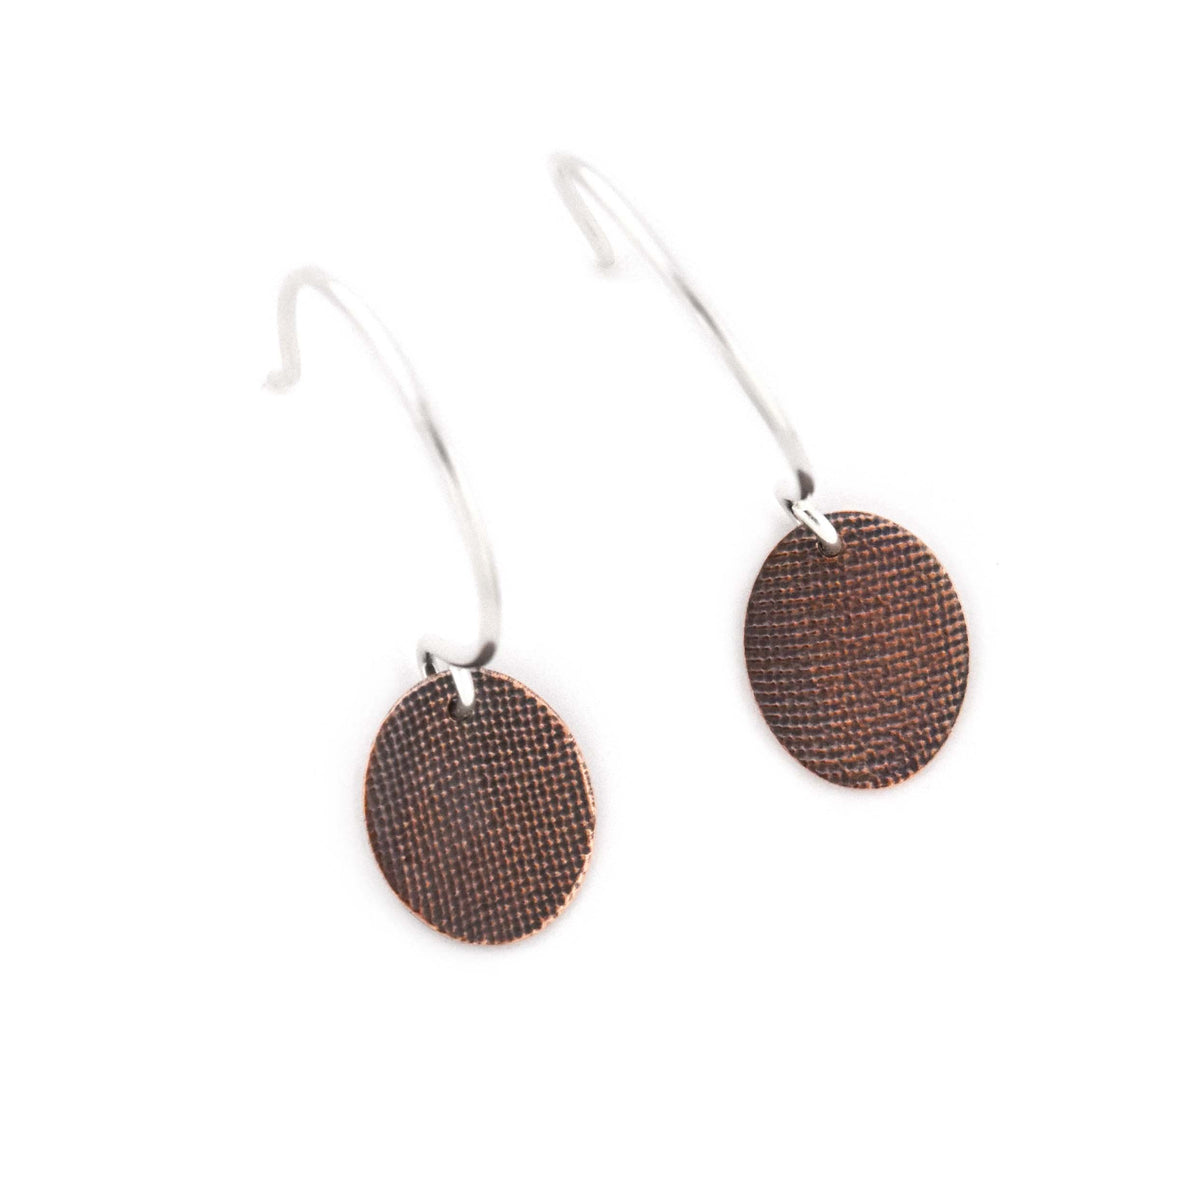 Cotton Woven Pressed Copper Earrings - Copper Earrings   5339 - handmade by Beth Millner Jewelry